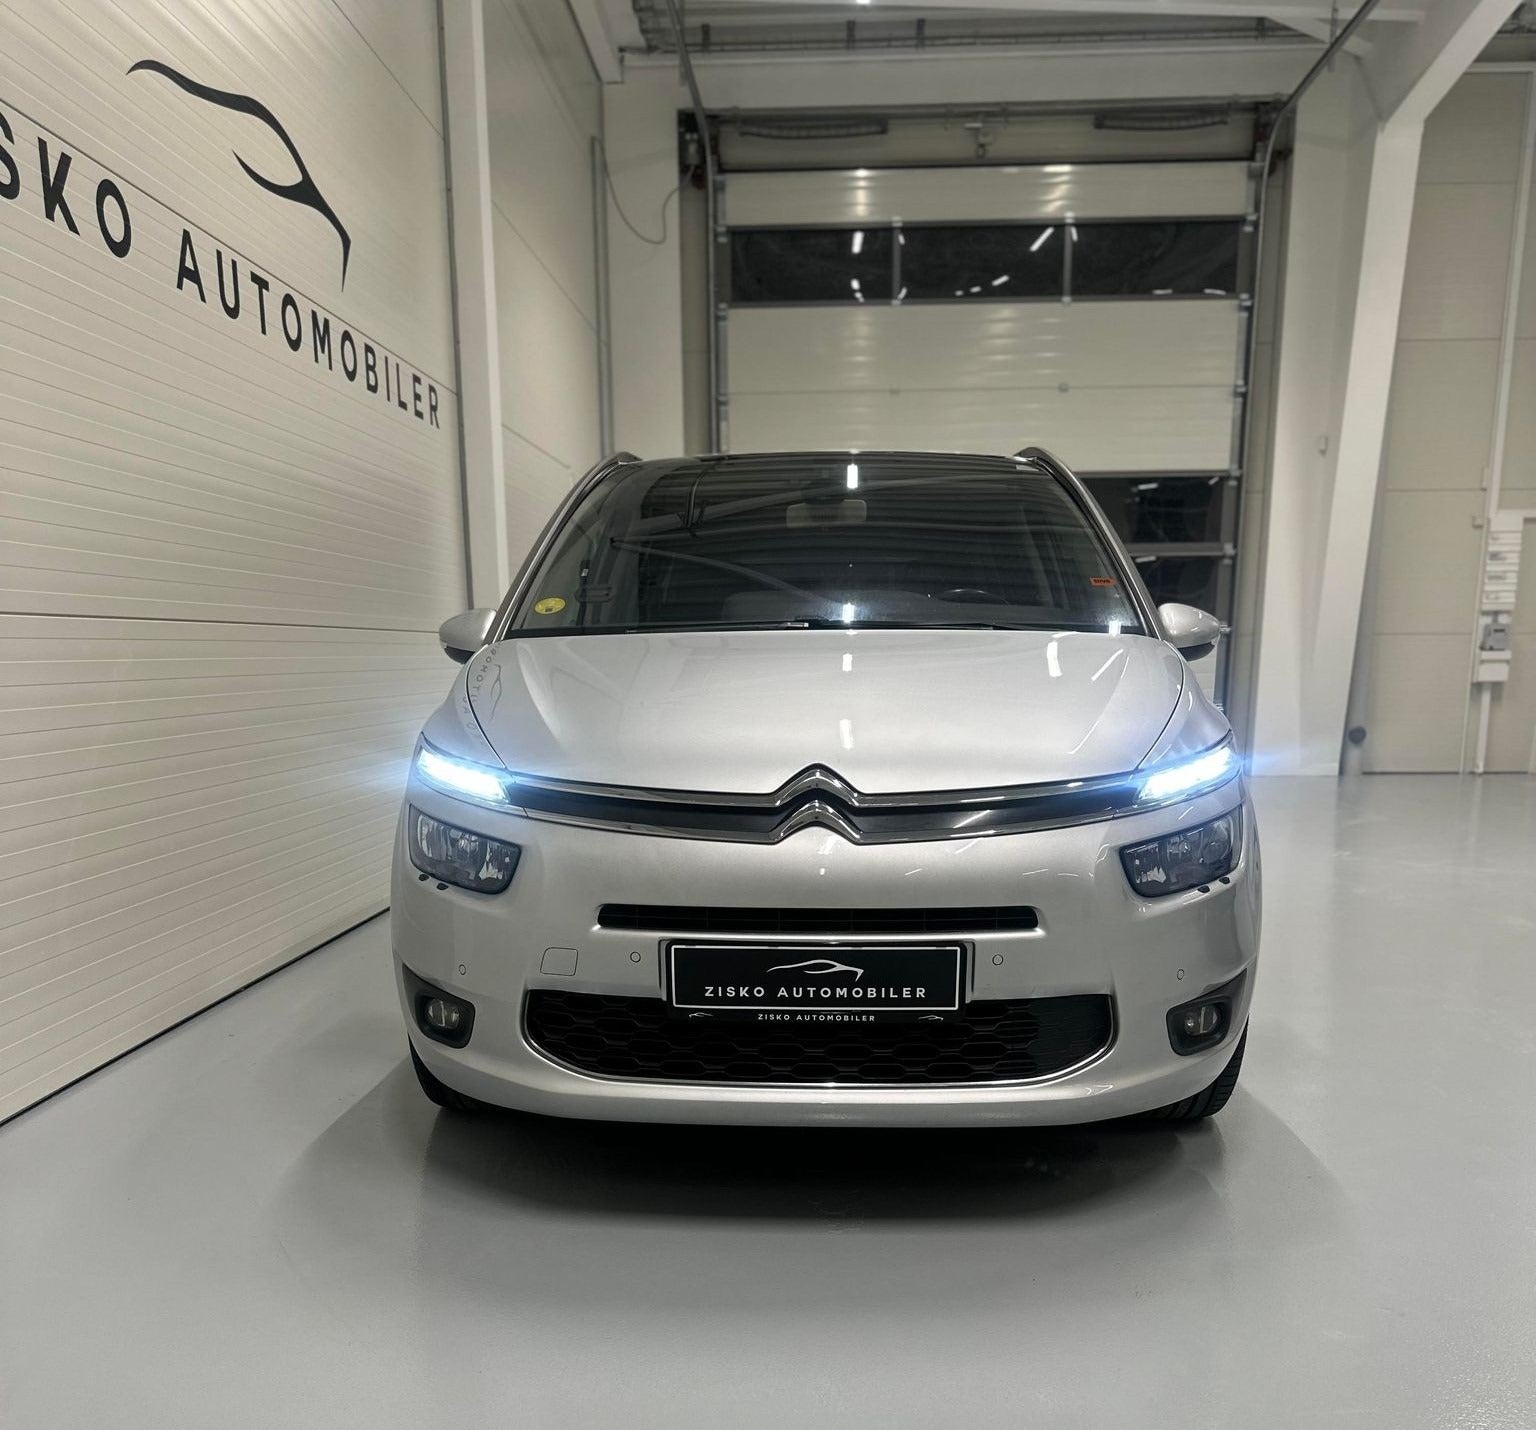 Citroën Grand C4 Picasso 2015